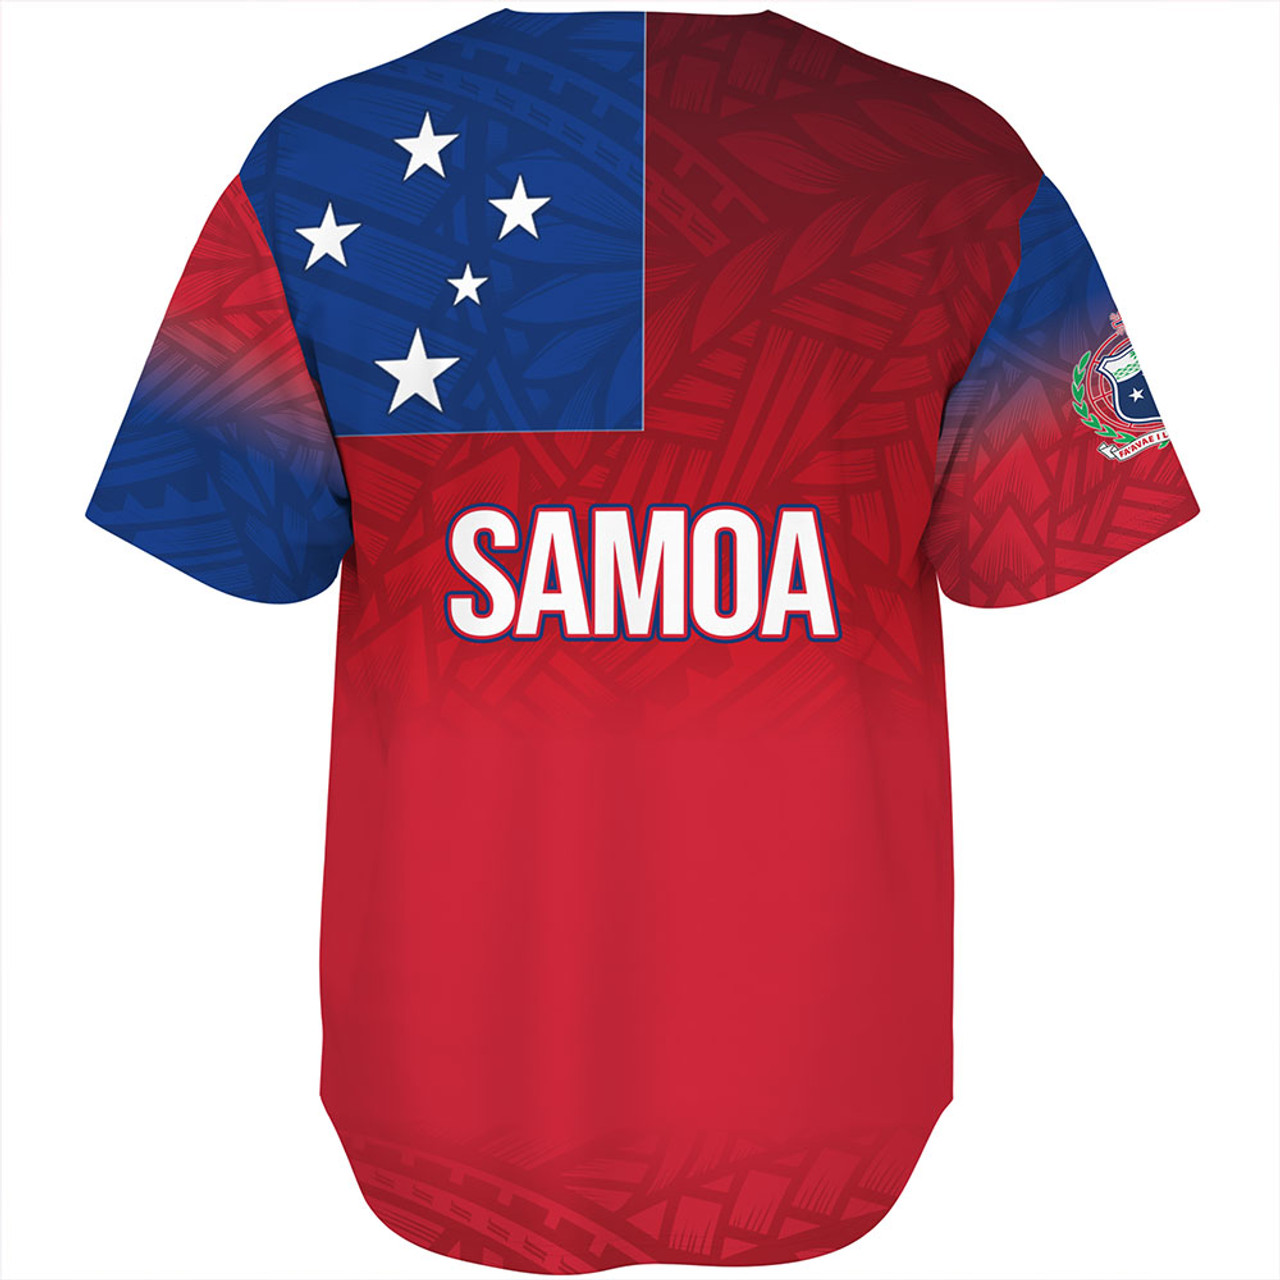 Samoa Baseball Shirt - Samoa Flag Color With Traditional Patterns